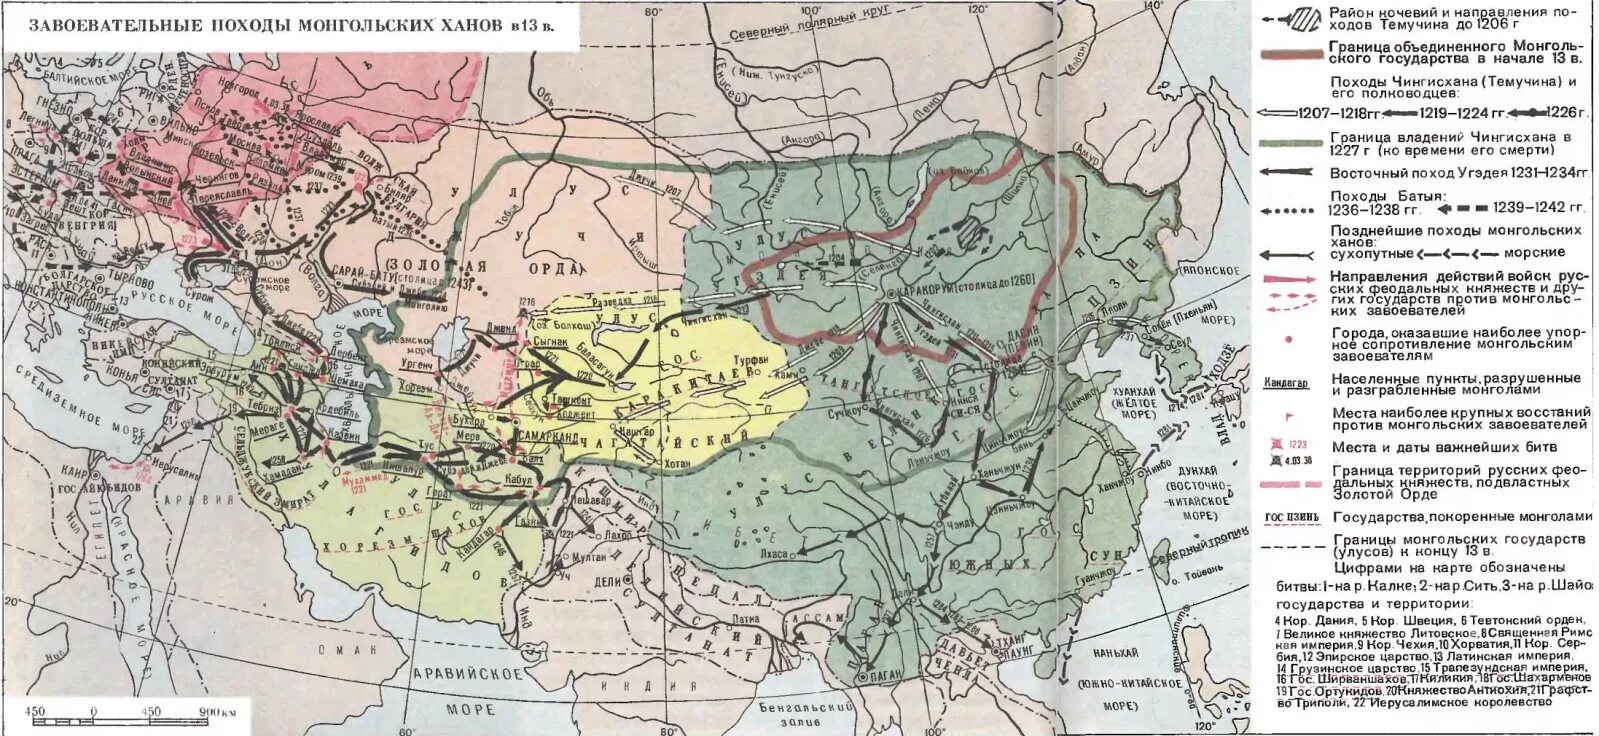 Нашествие чингисхана на русь. Завоевания Чингисхана карта. Карта монгольские завоевания Руси в 13 веке. Карта завоеваний монголов в 13 веке. Монгольская Империя 1223.